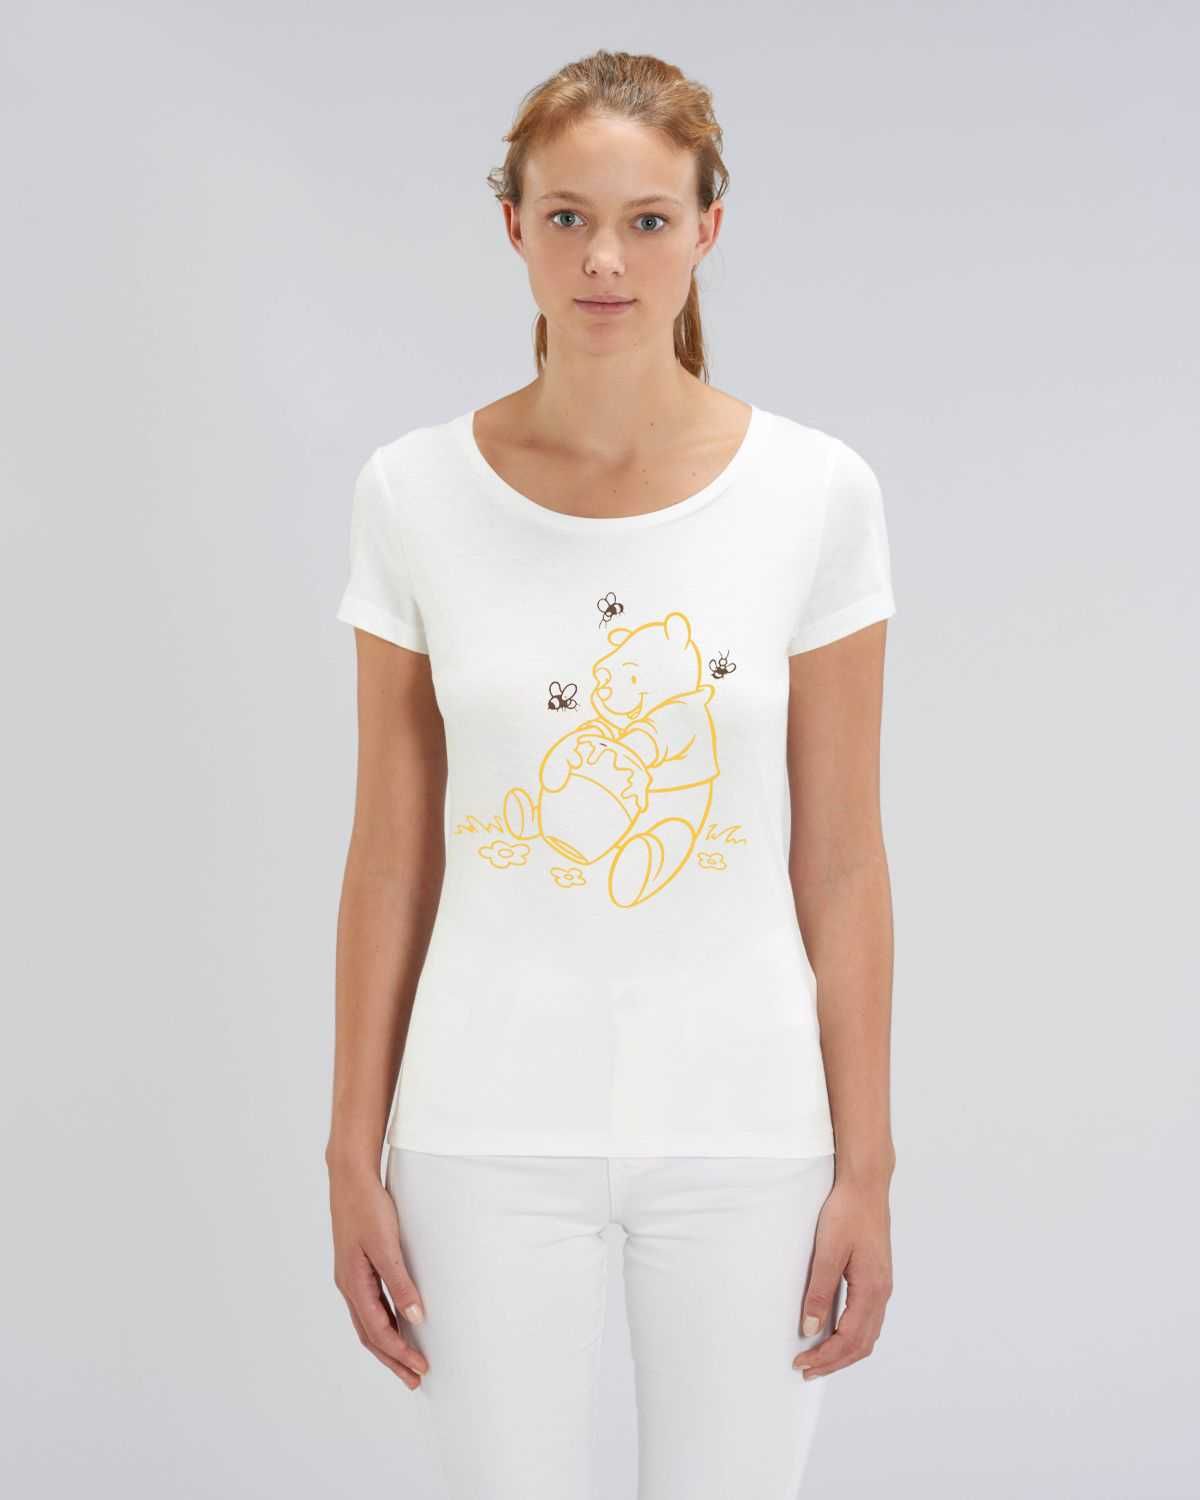 Дамски и Мъжки тениски с Мечо Пух, The Pooh Honey